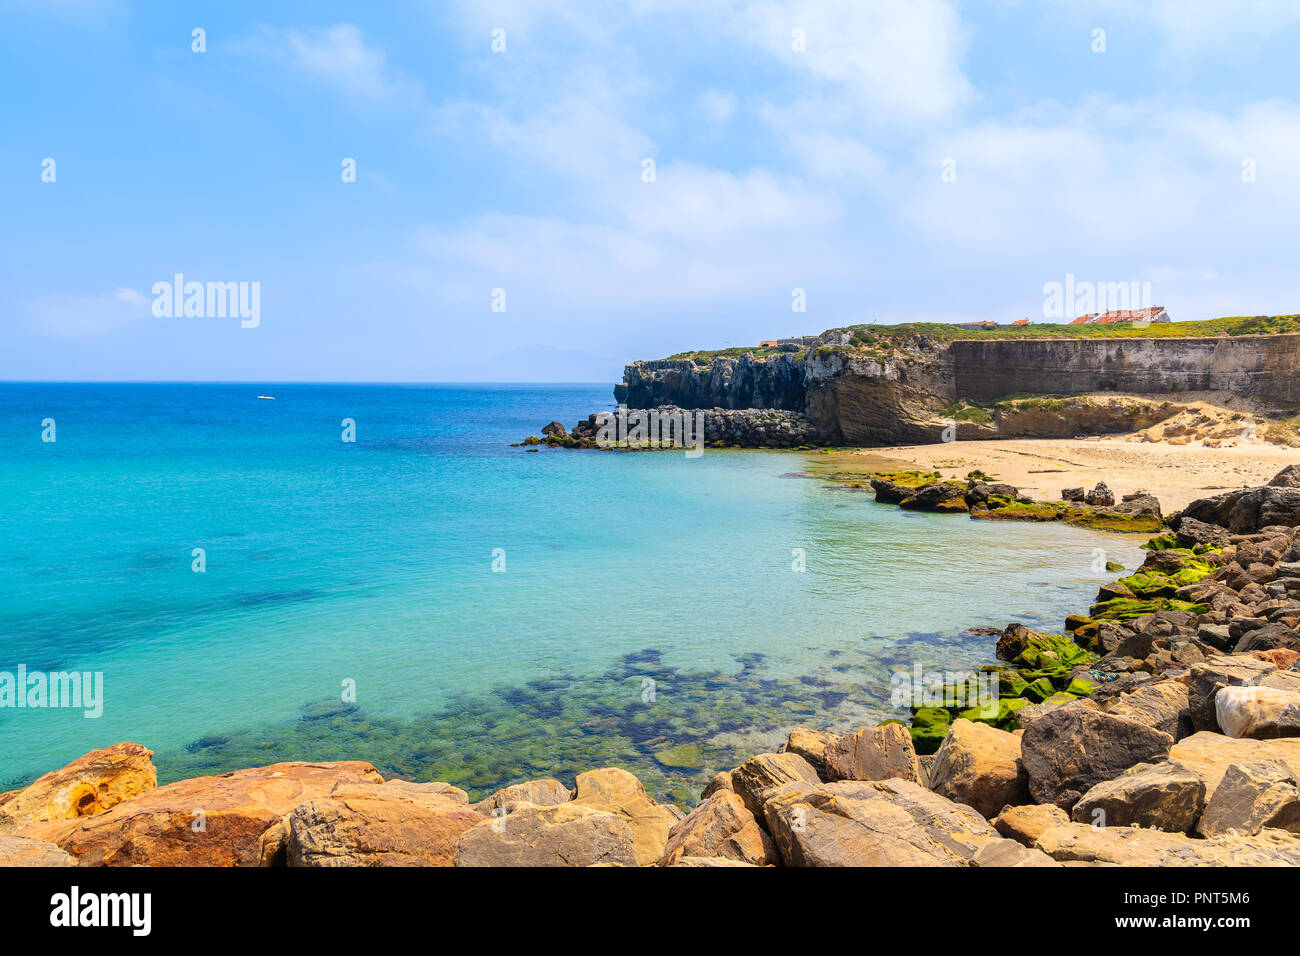 Rocks on sea coast and view of beach in Tarifa town, Costa de la Luz, Spain Stock Photo